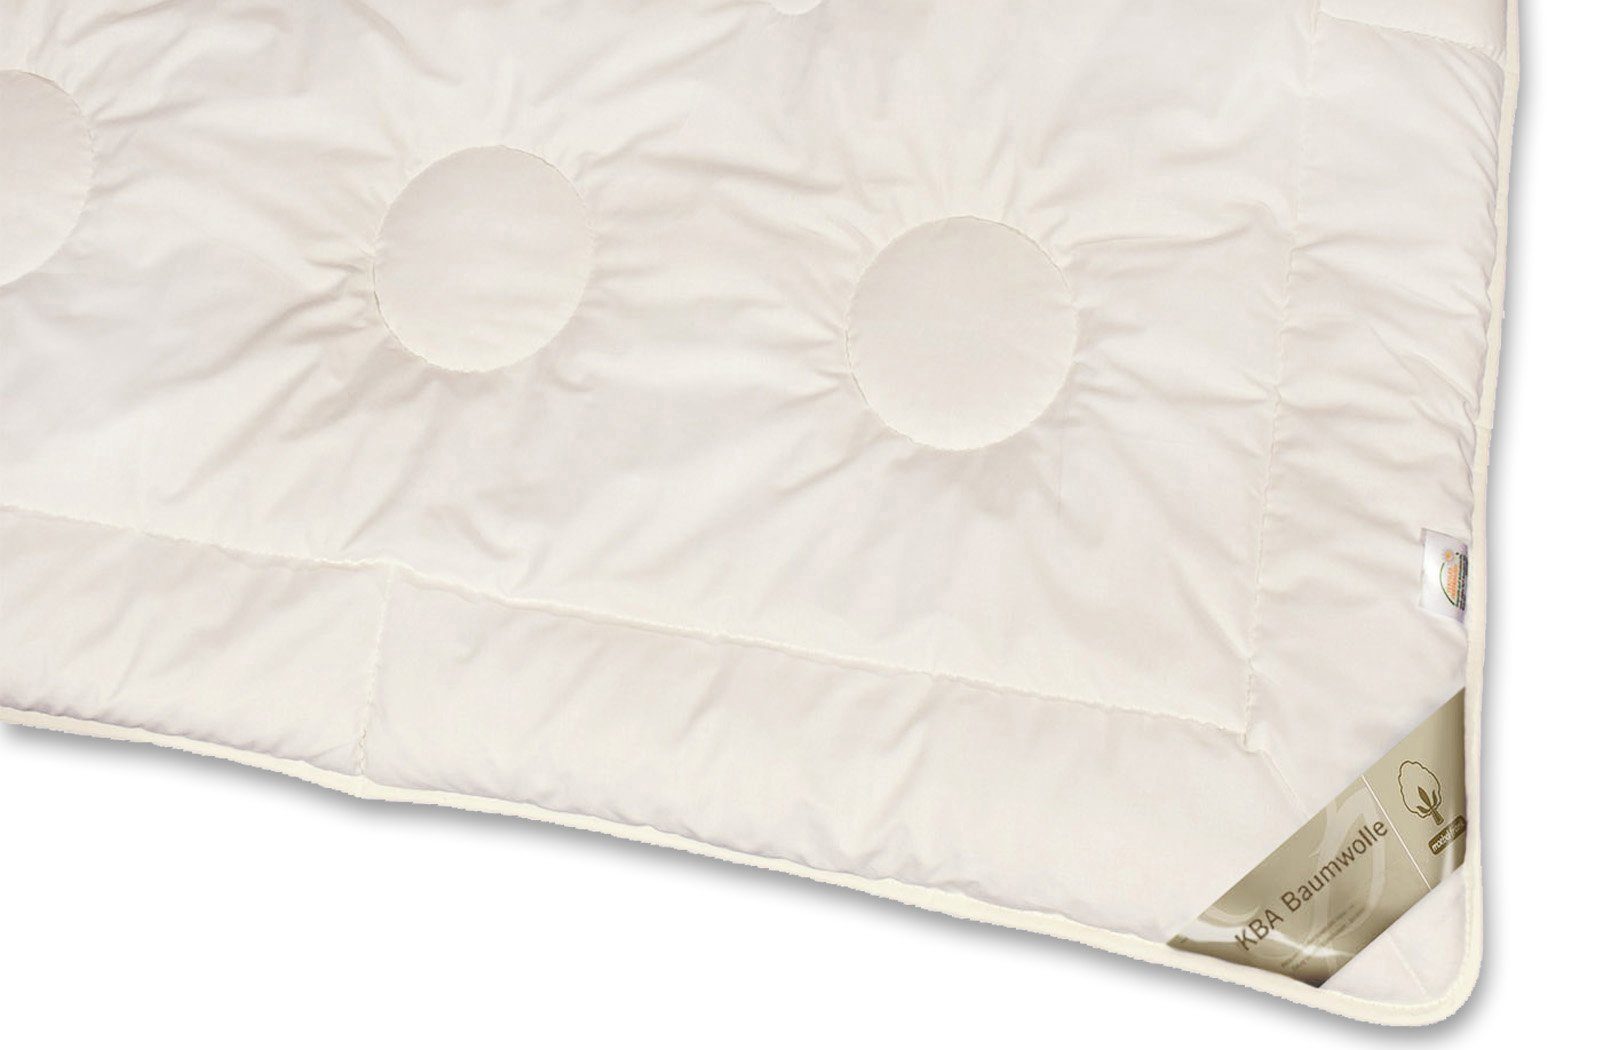 4-Jahreszeitenbett, Nancy, Füllung: kbA, franknatur, 100% Nutzung für 100% Bezug: Baumwolle ganzjährige Bettdecke Baumwolle kbA